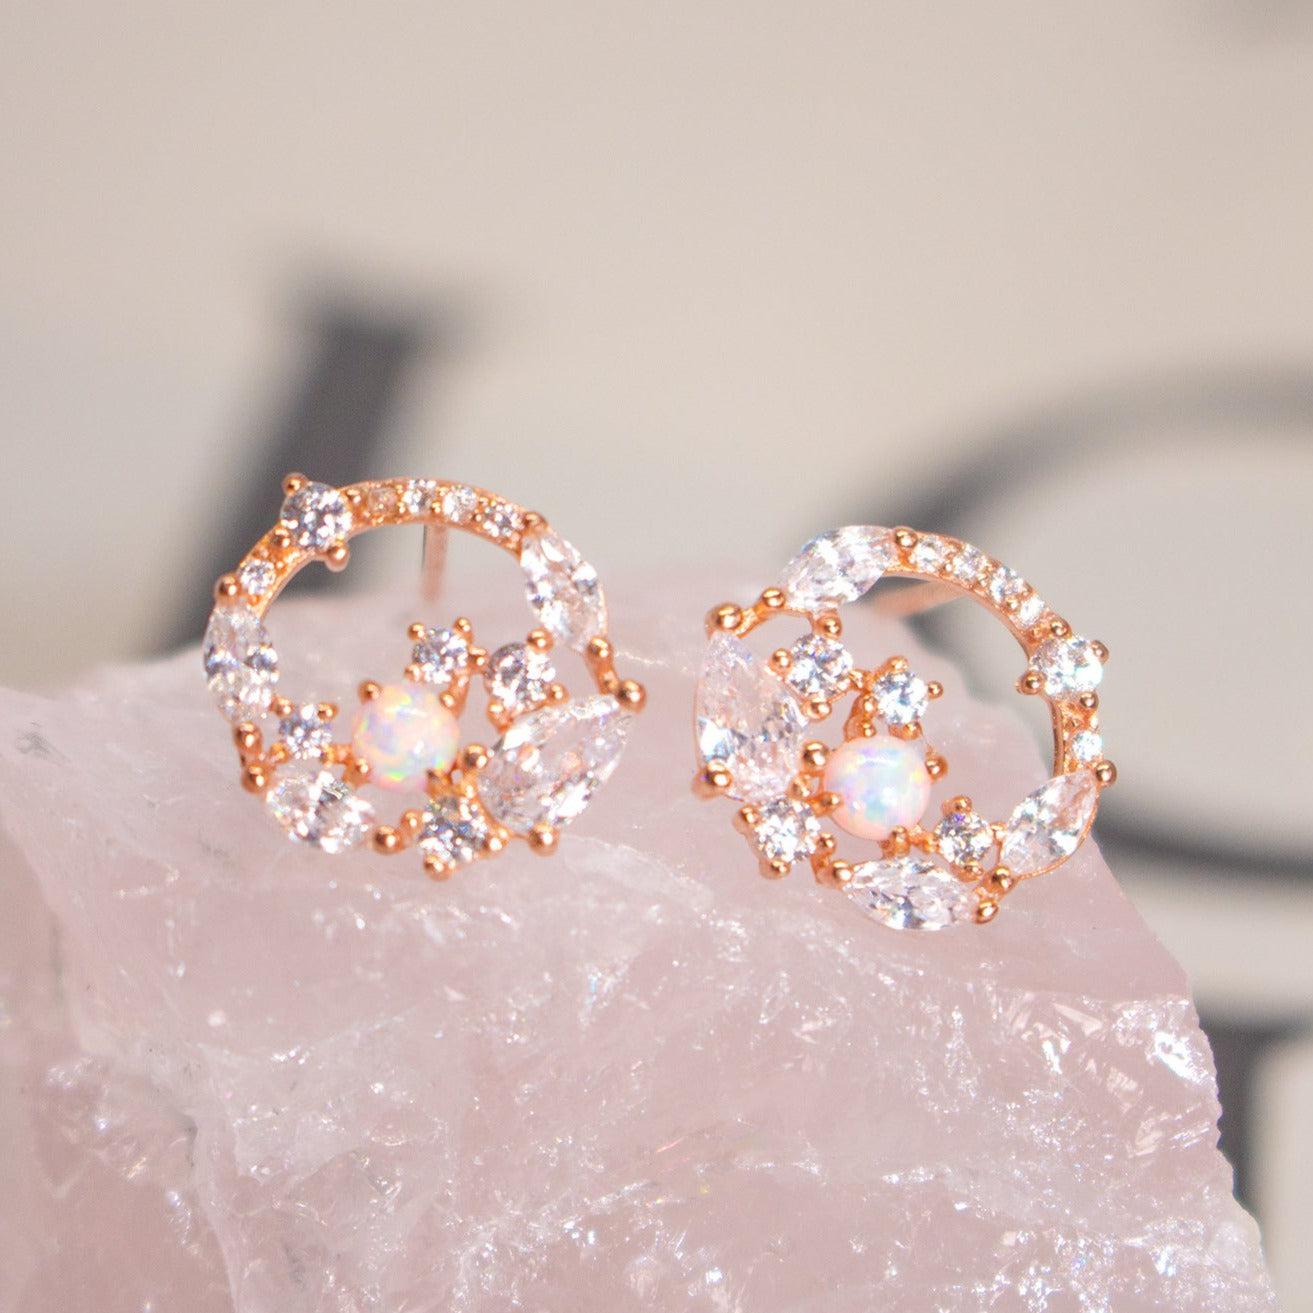 Opal Wreath Earrings